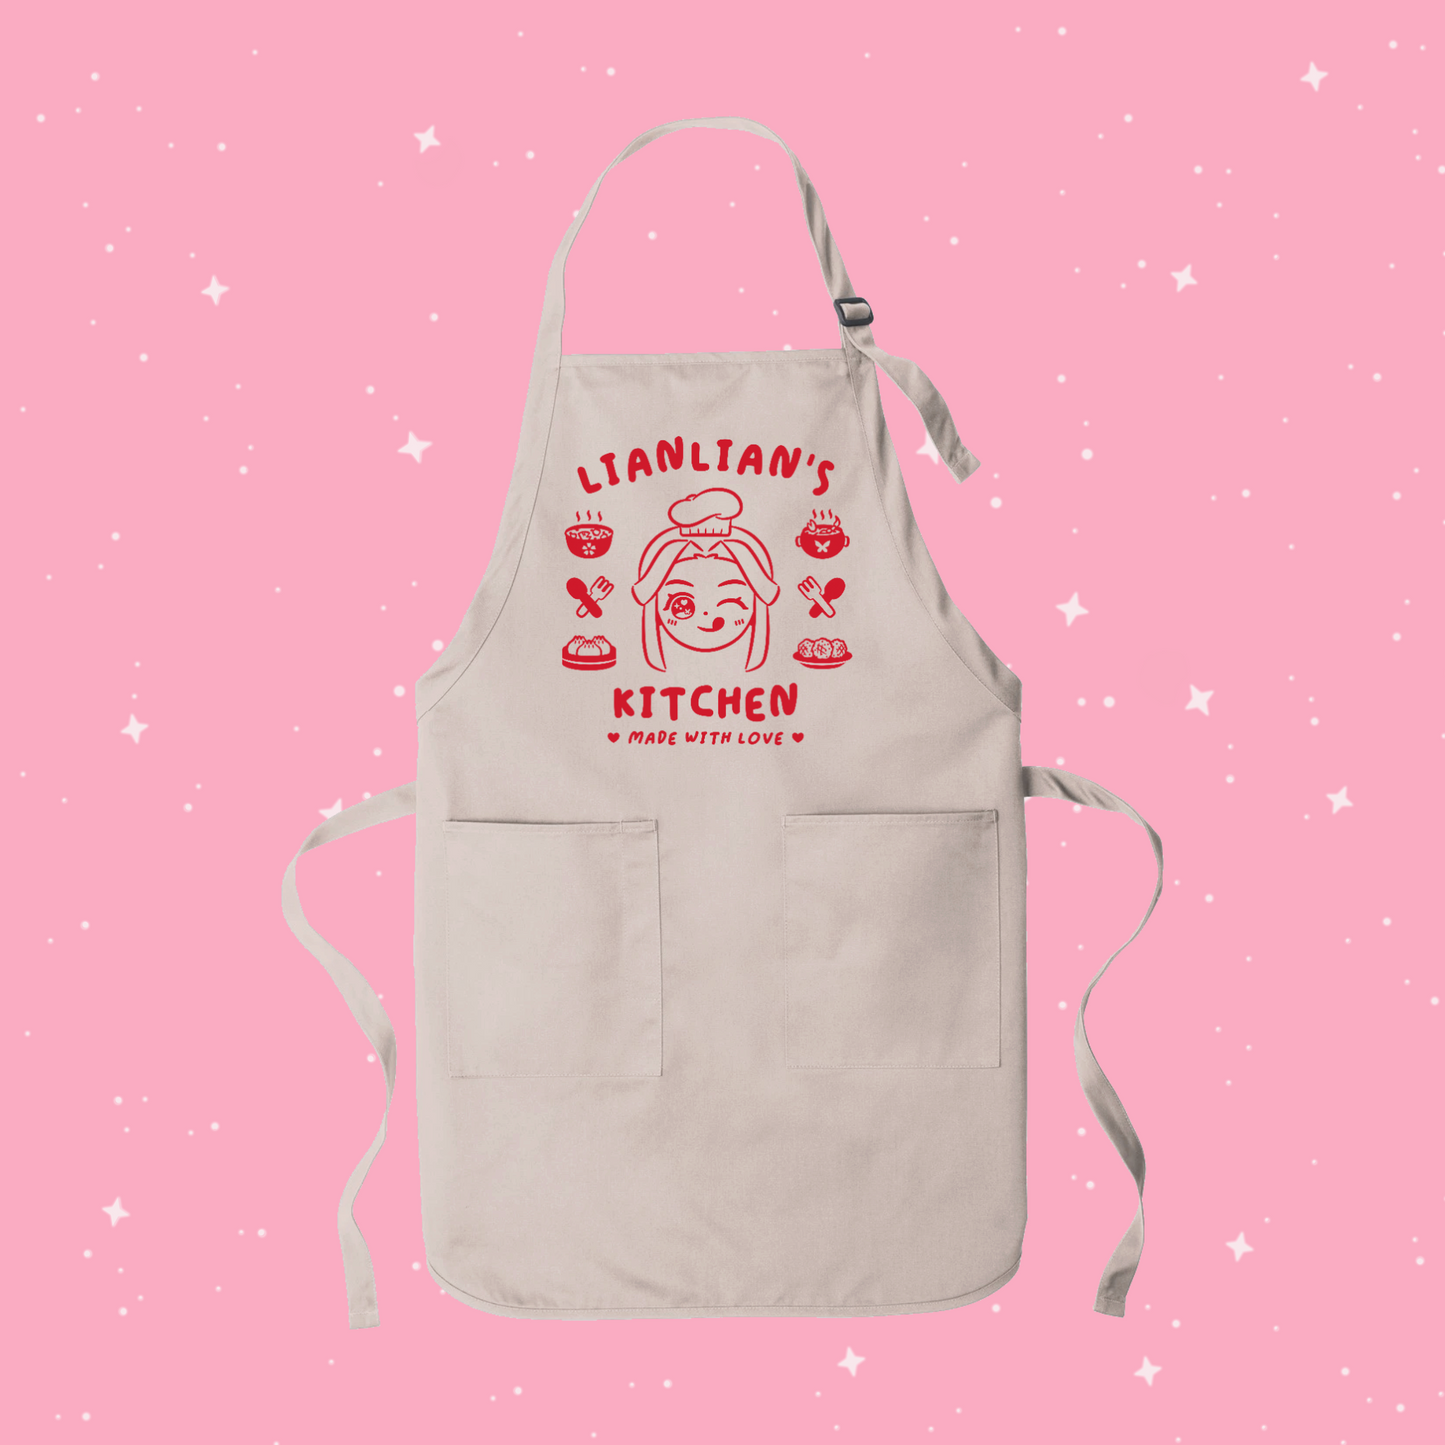 Lianlian’s Kitchen Apron